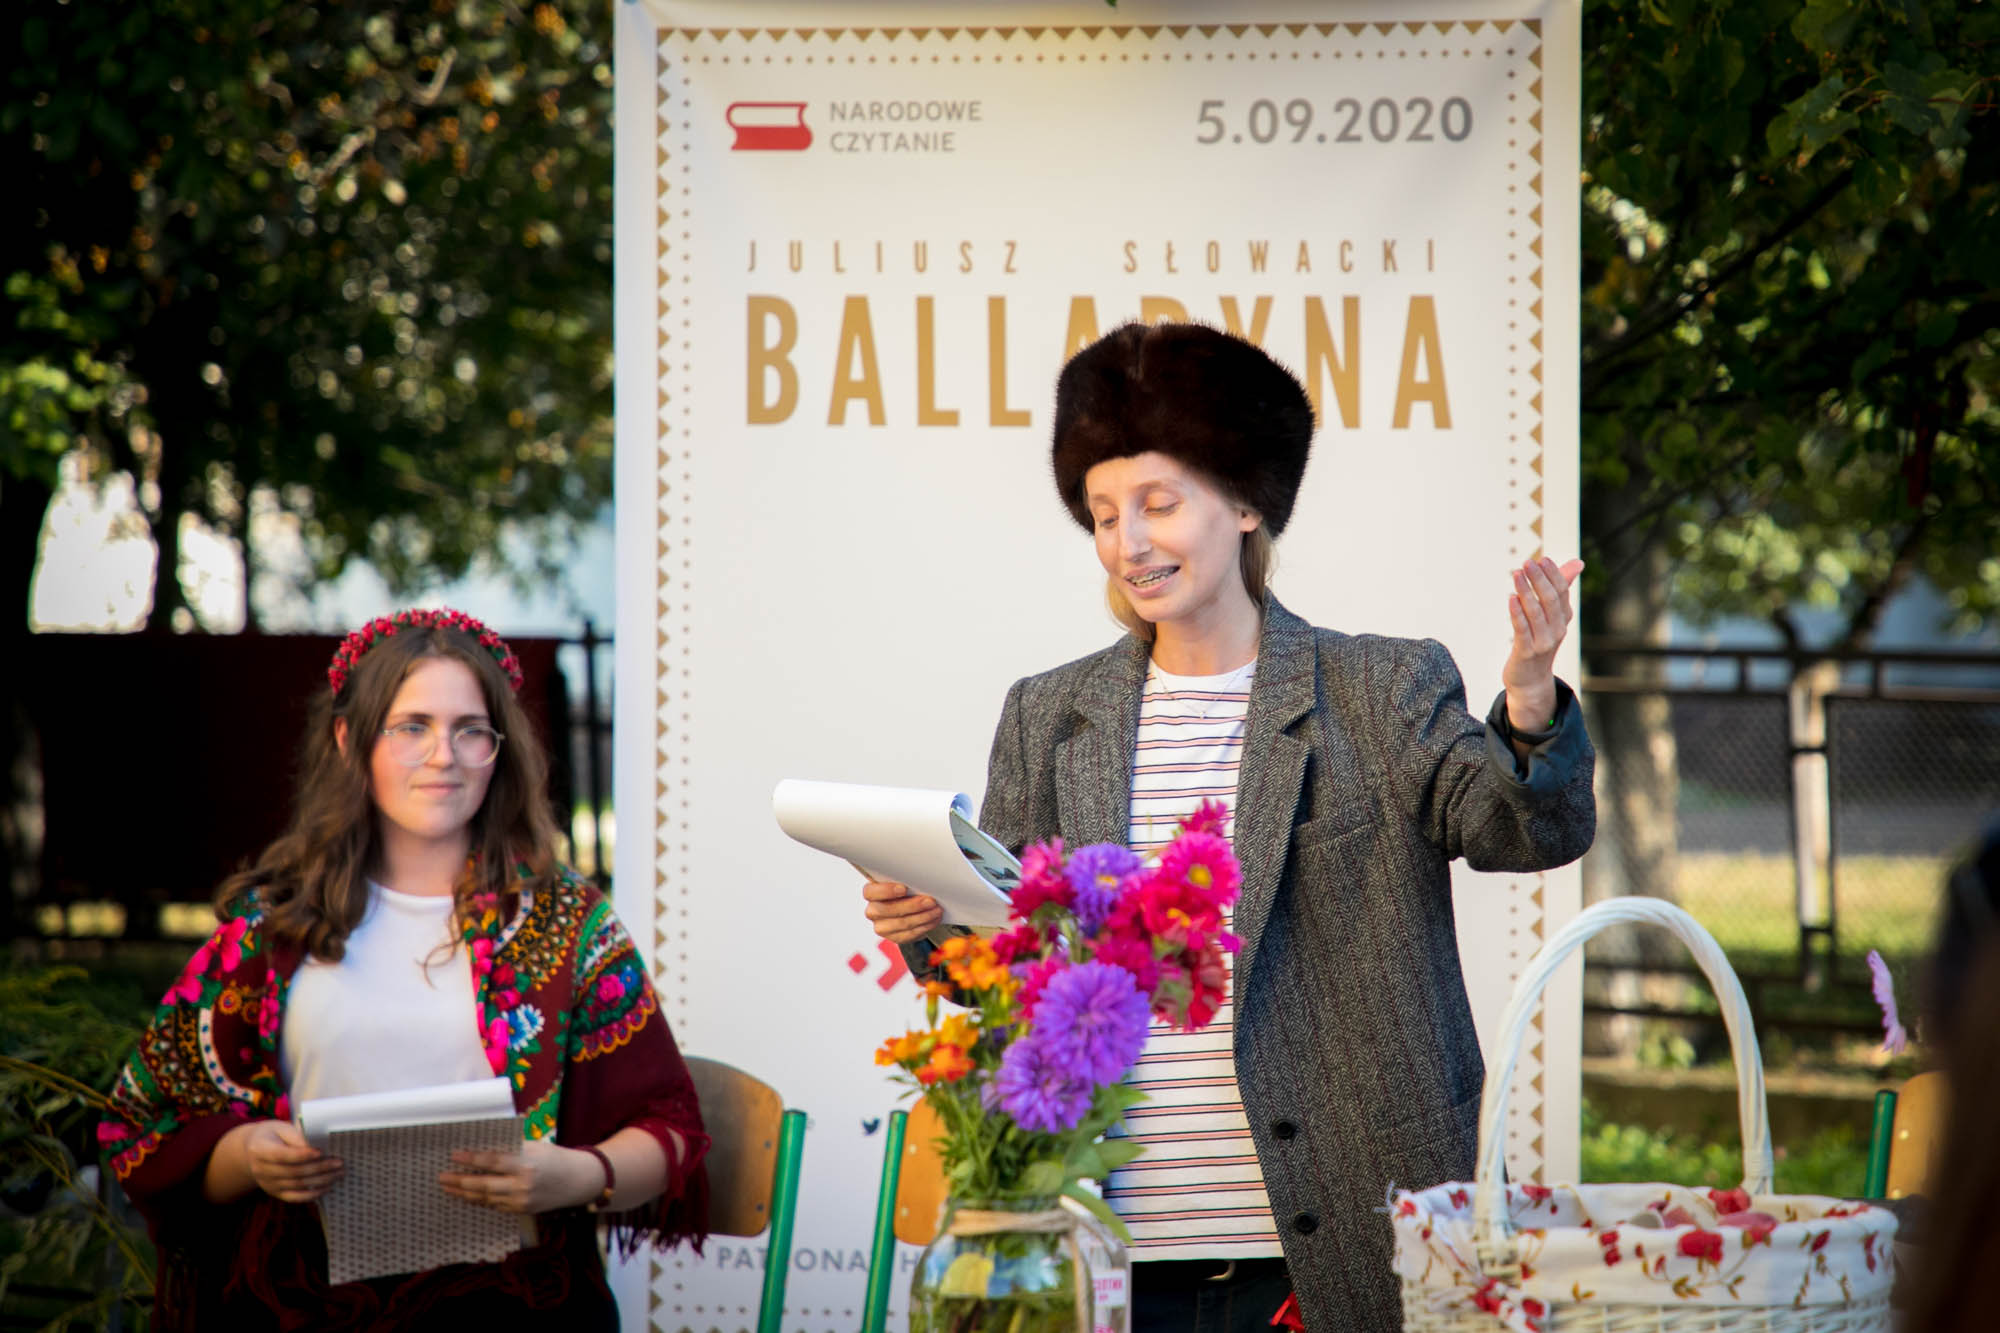 Polonistyczny wieczór literacki w ramach Narodowego Czytania Balladyny 2020